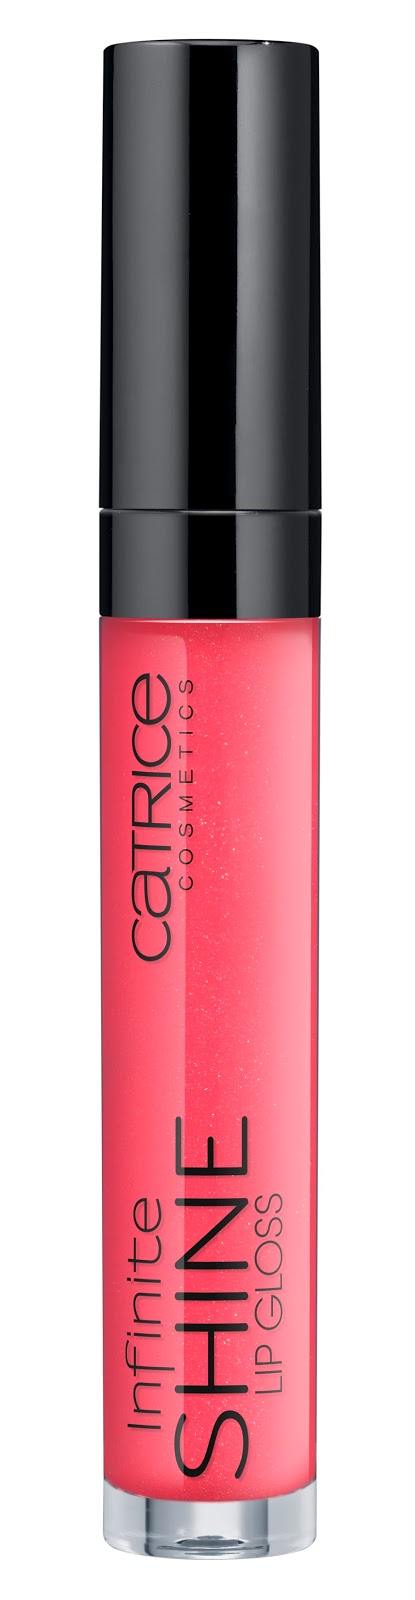 Catrice - Infinite Shine Lip Gloss